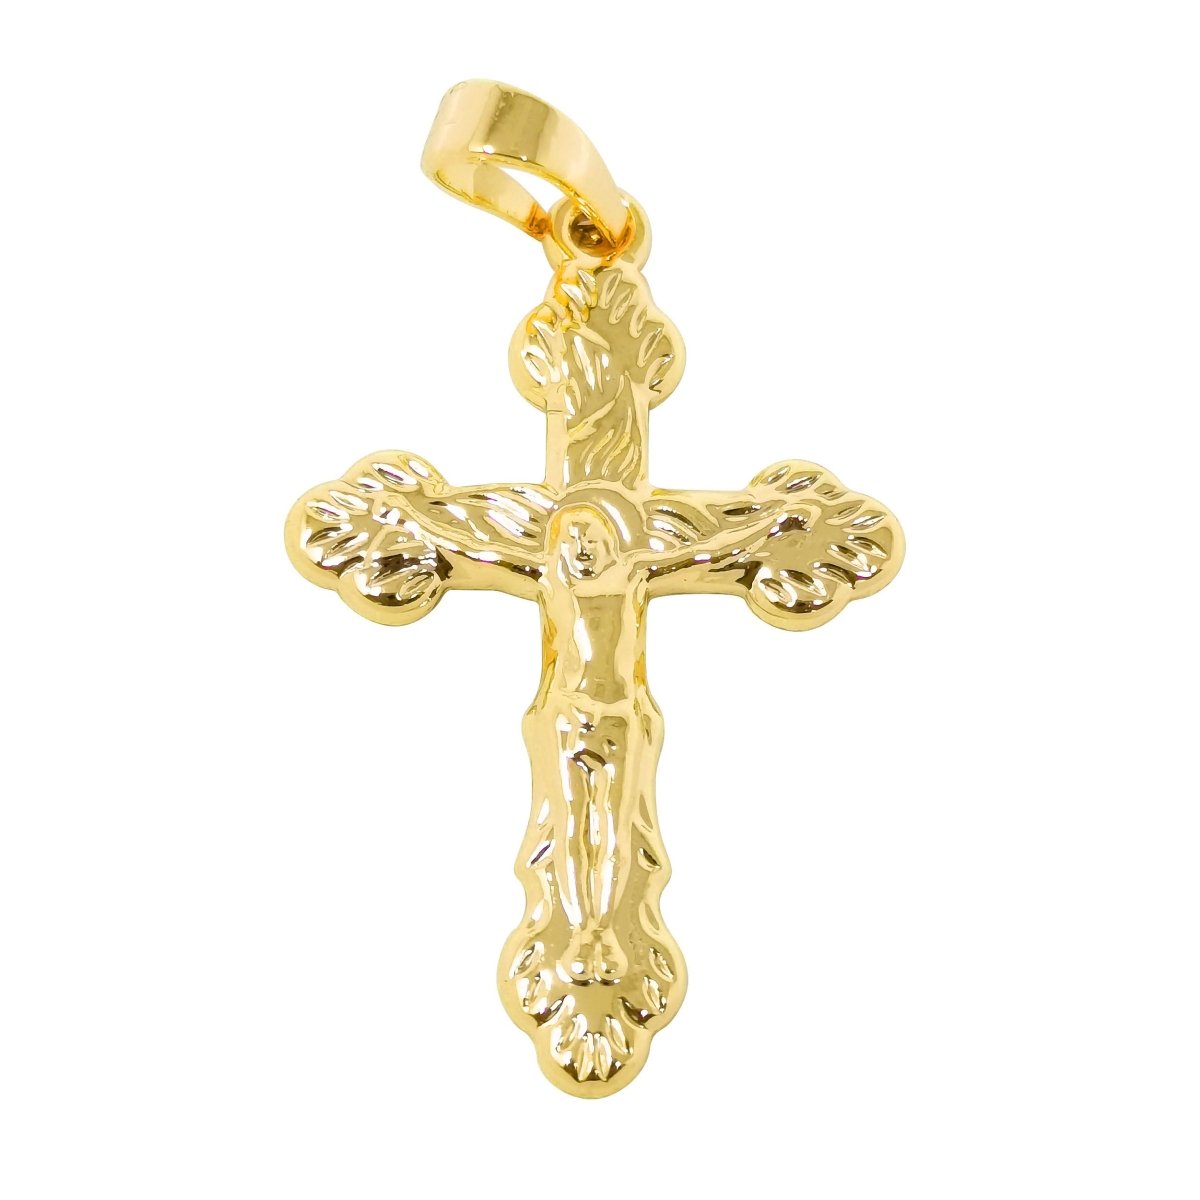 27x17mm Wholesale Gold Filled Jesus on Cross Pendant, 24K or 14K Option, Christian Pendant for Necklace Bracelet Anklet Making J-193 J-194 - DLUXCA